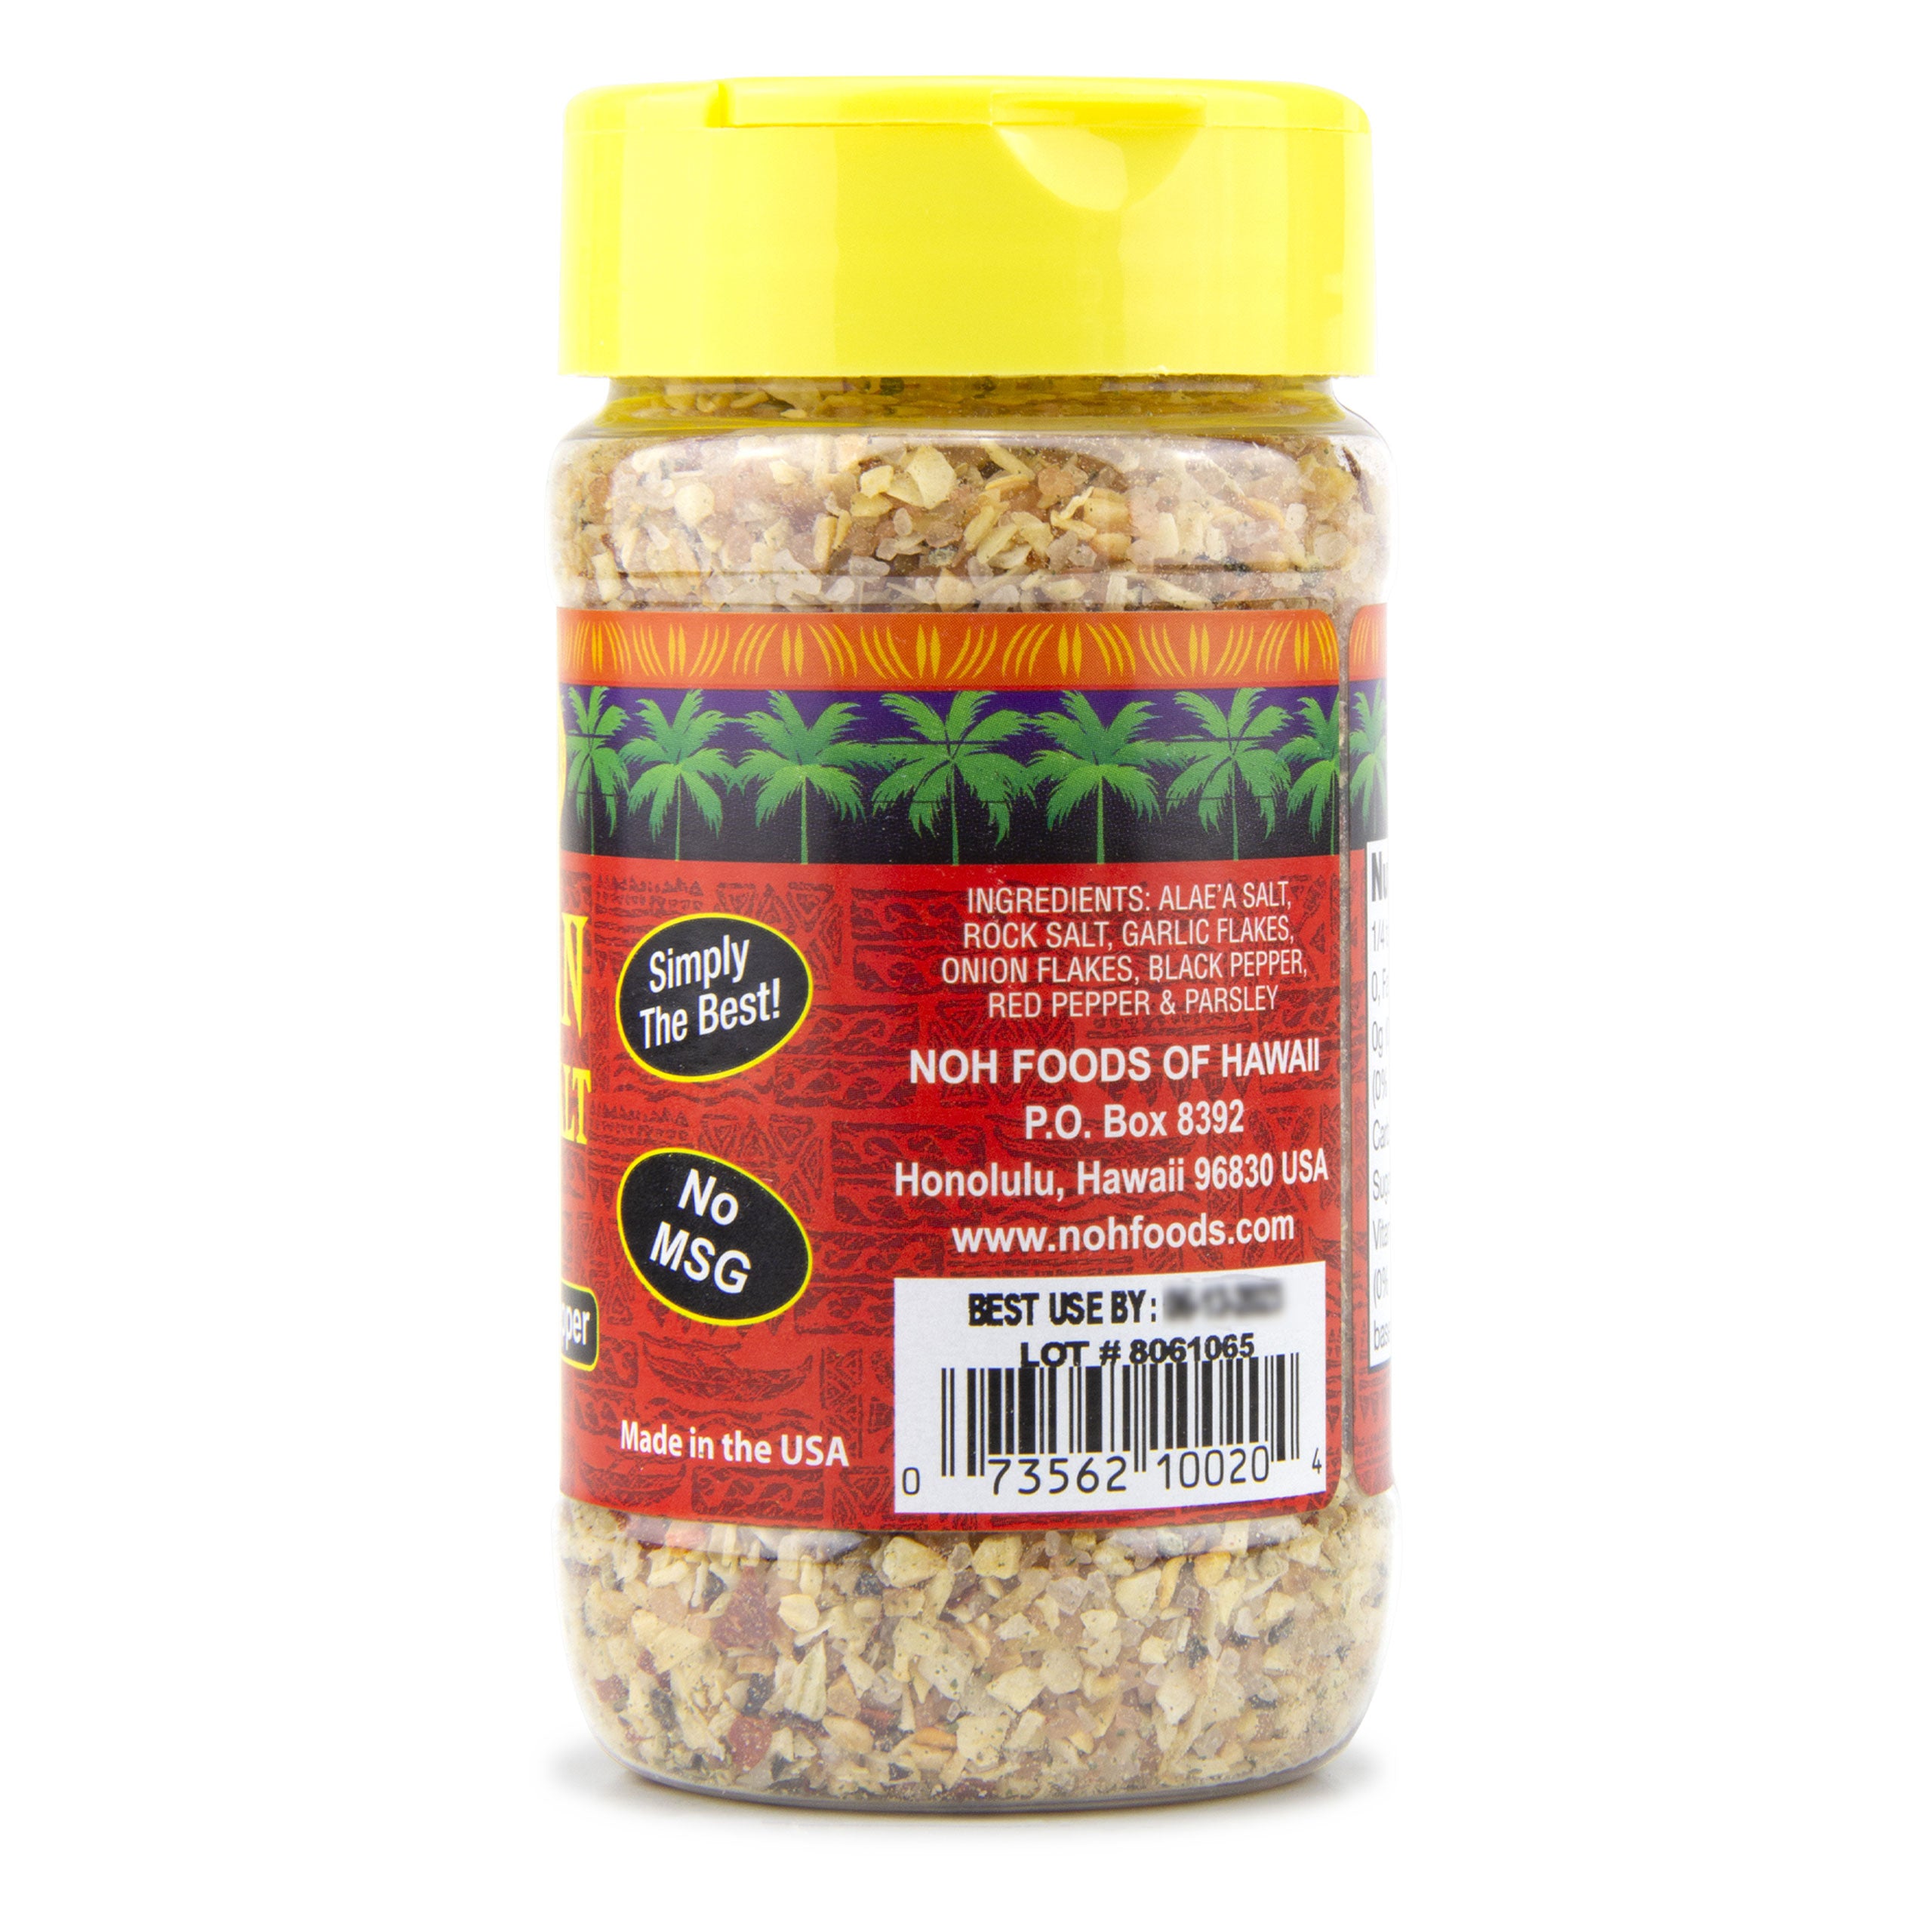 Noh Foods Of Hawaii Seasoning Salt, Garlic Herb, Hawaiian - 7 oz